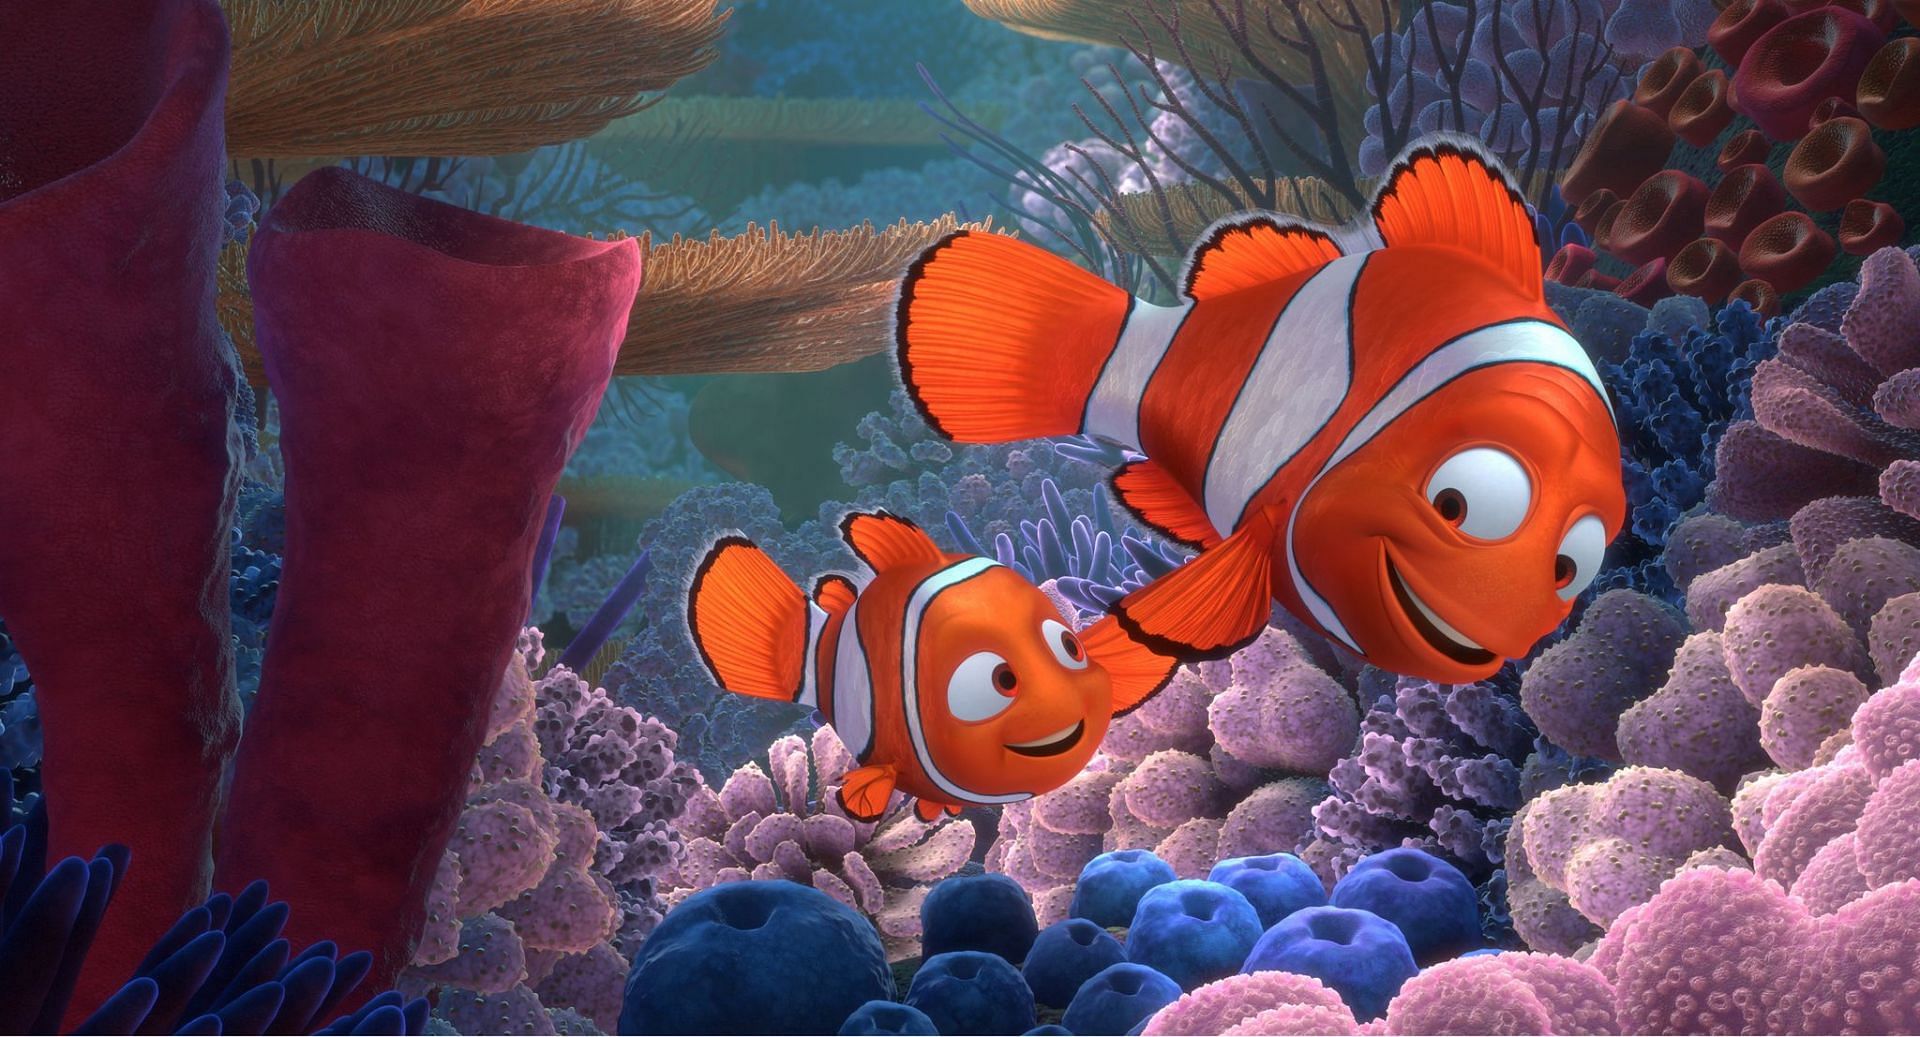 A still from Finding Nemo (Image via Pixar)